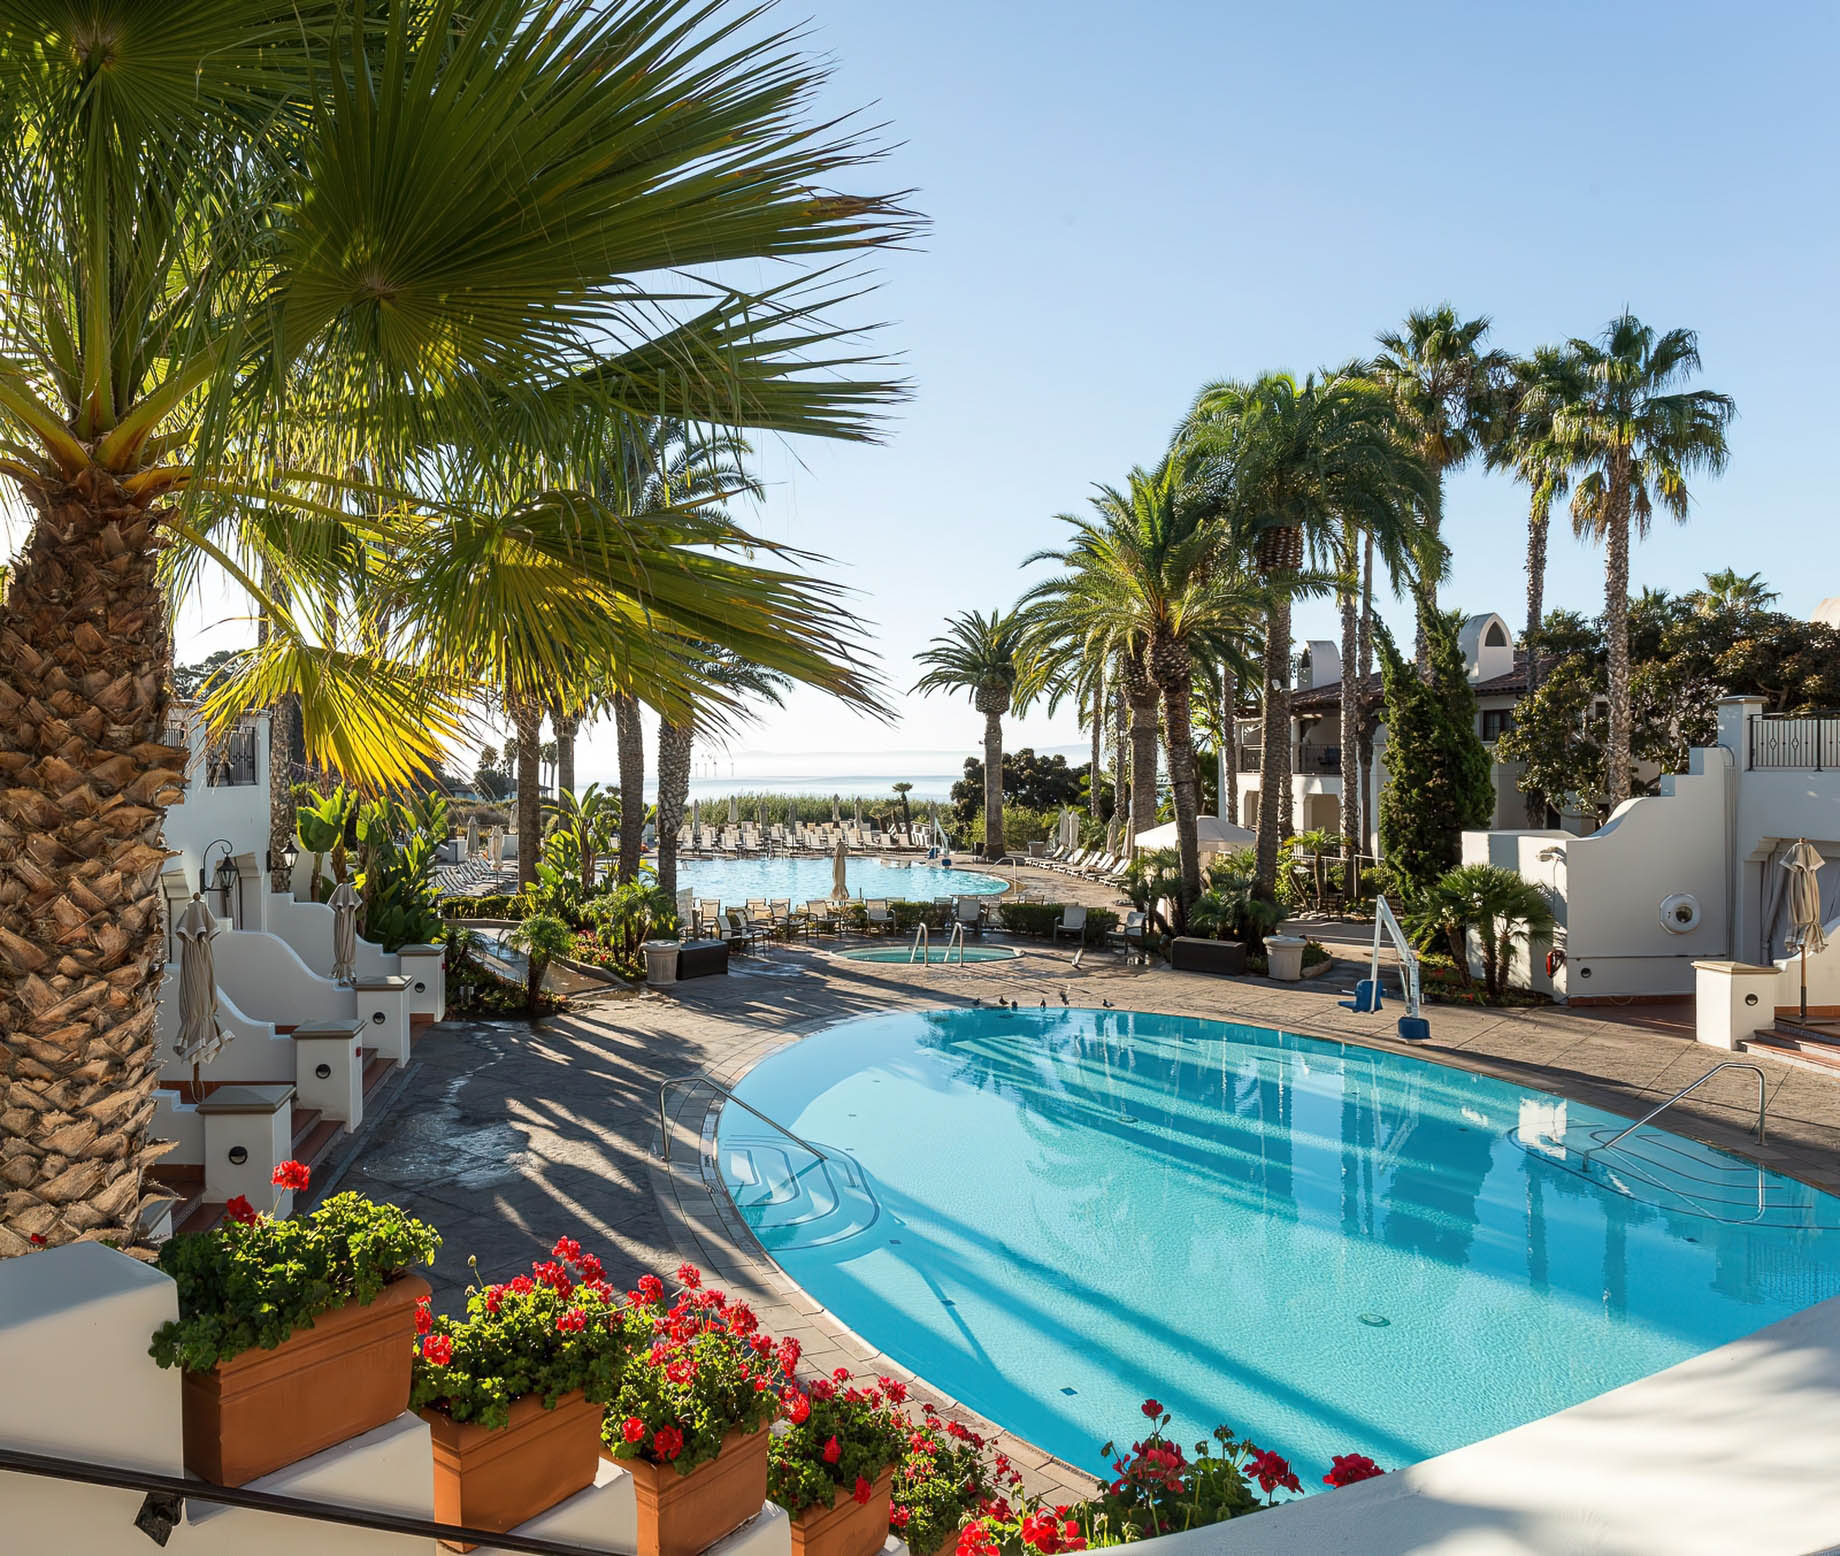 The Ritz-Carlton Bacara, Santa Barbara Resort - Santa Barbara, CA, USA - Resort Pool Deck View